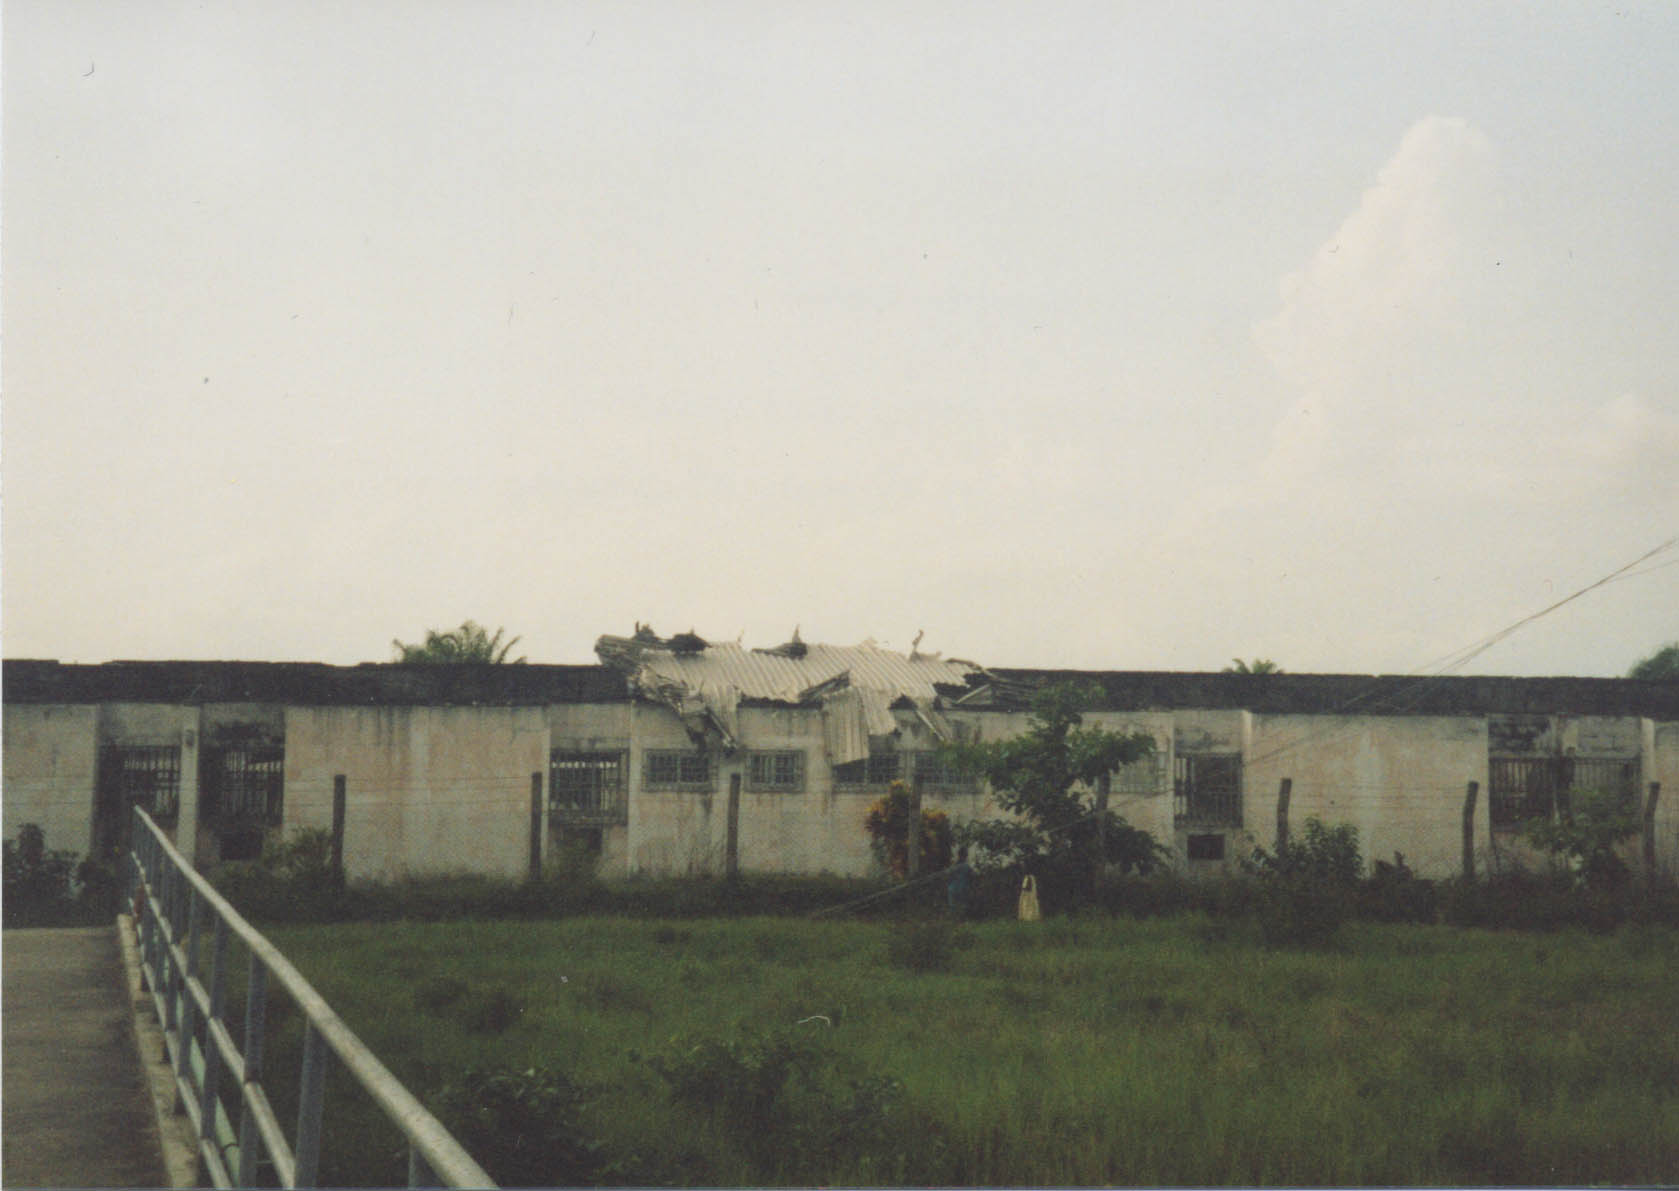 Abandoned Community Hospital